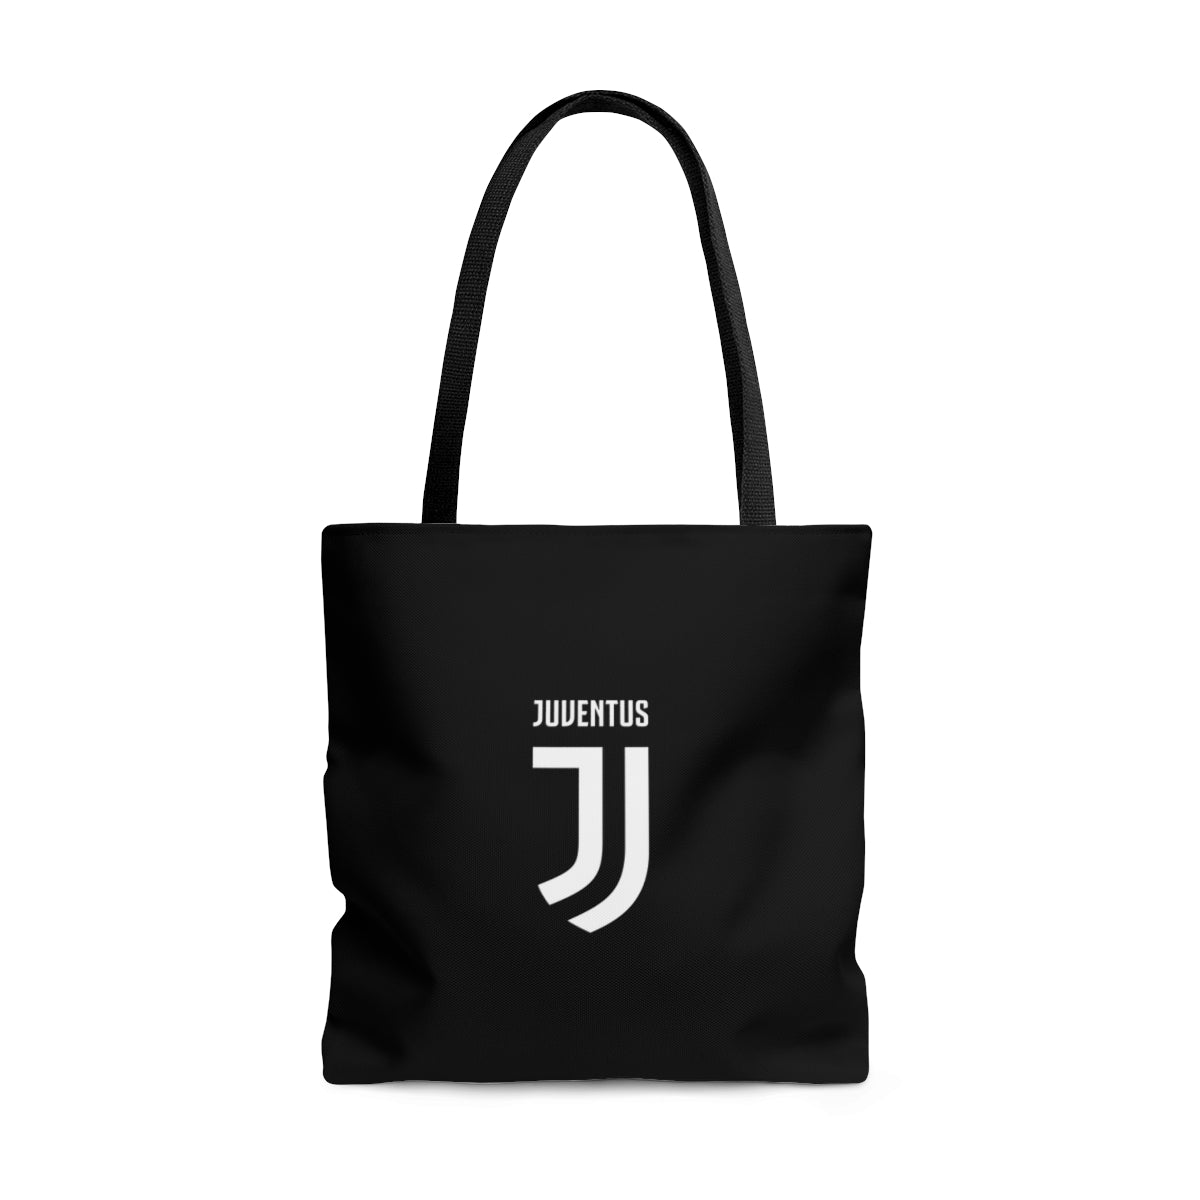 Juventus Tote Bag